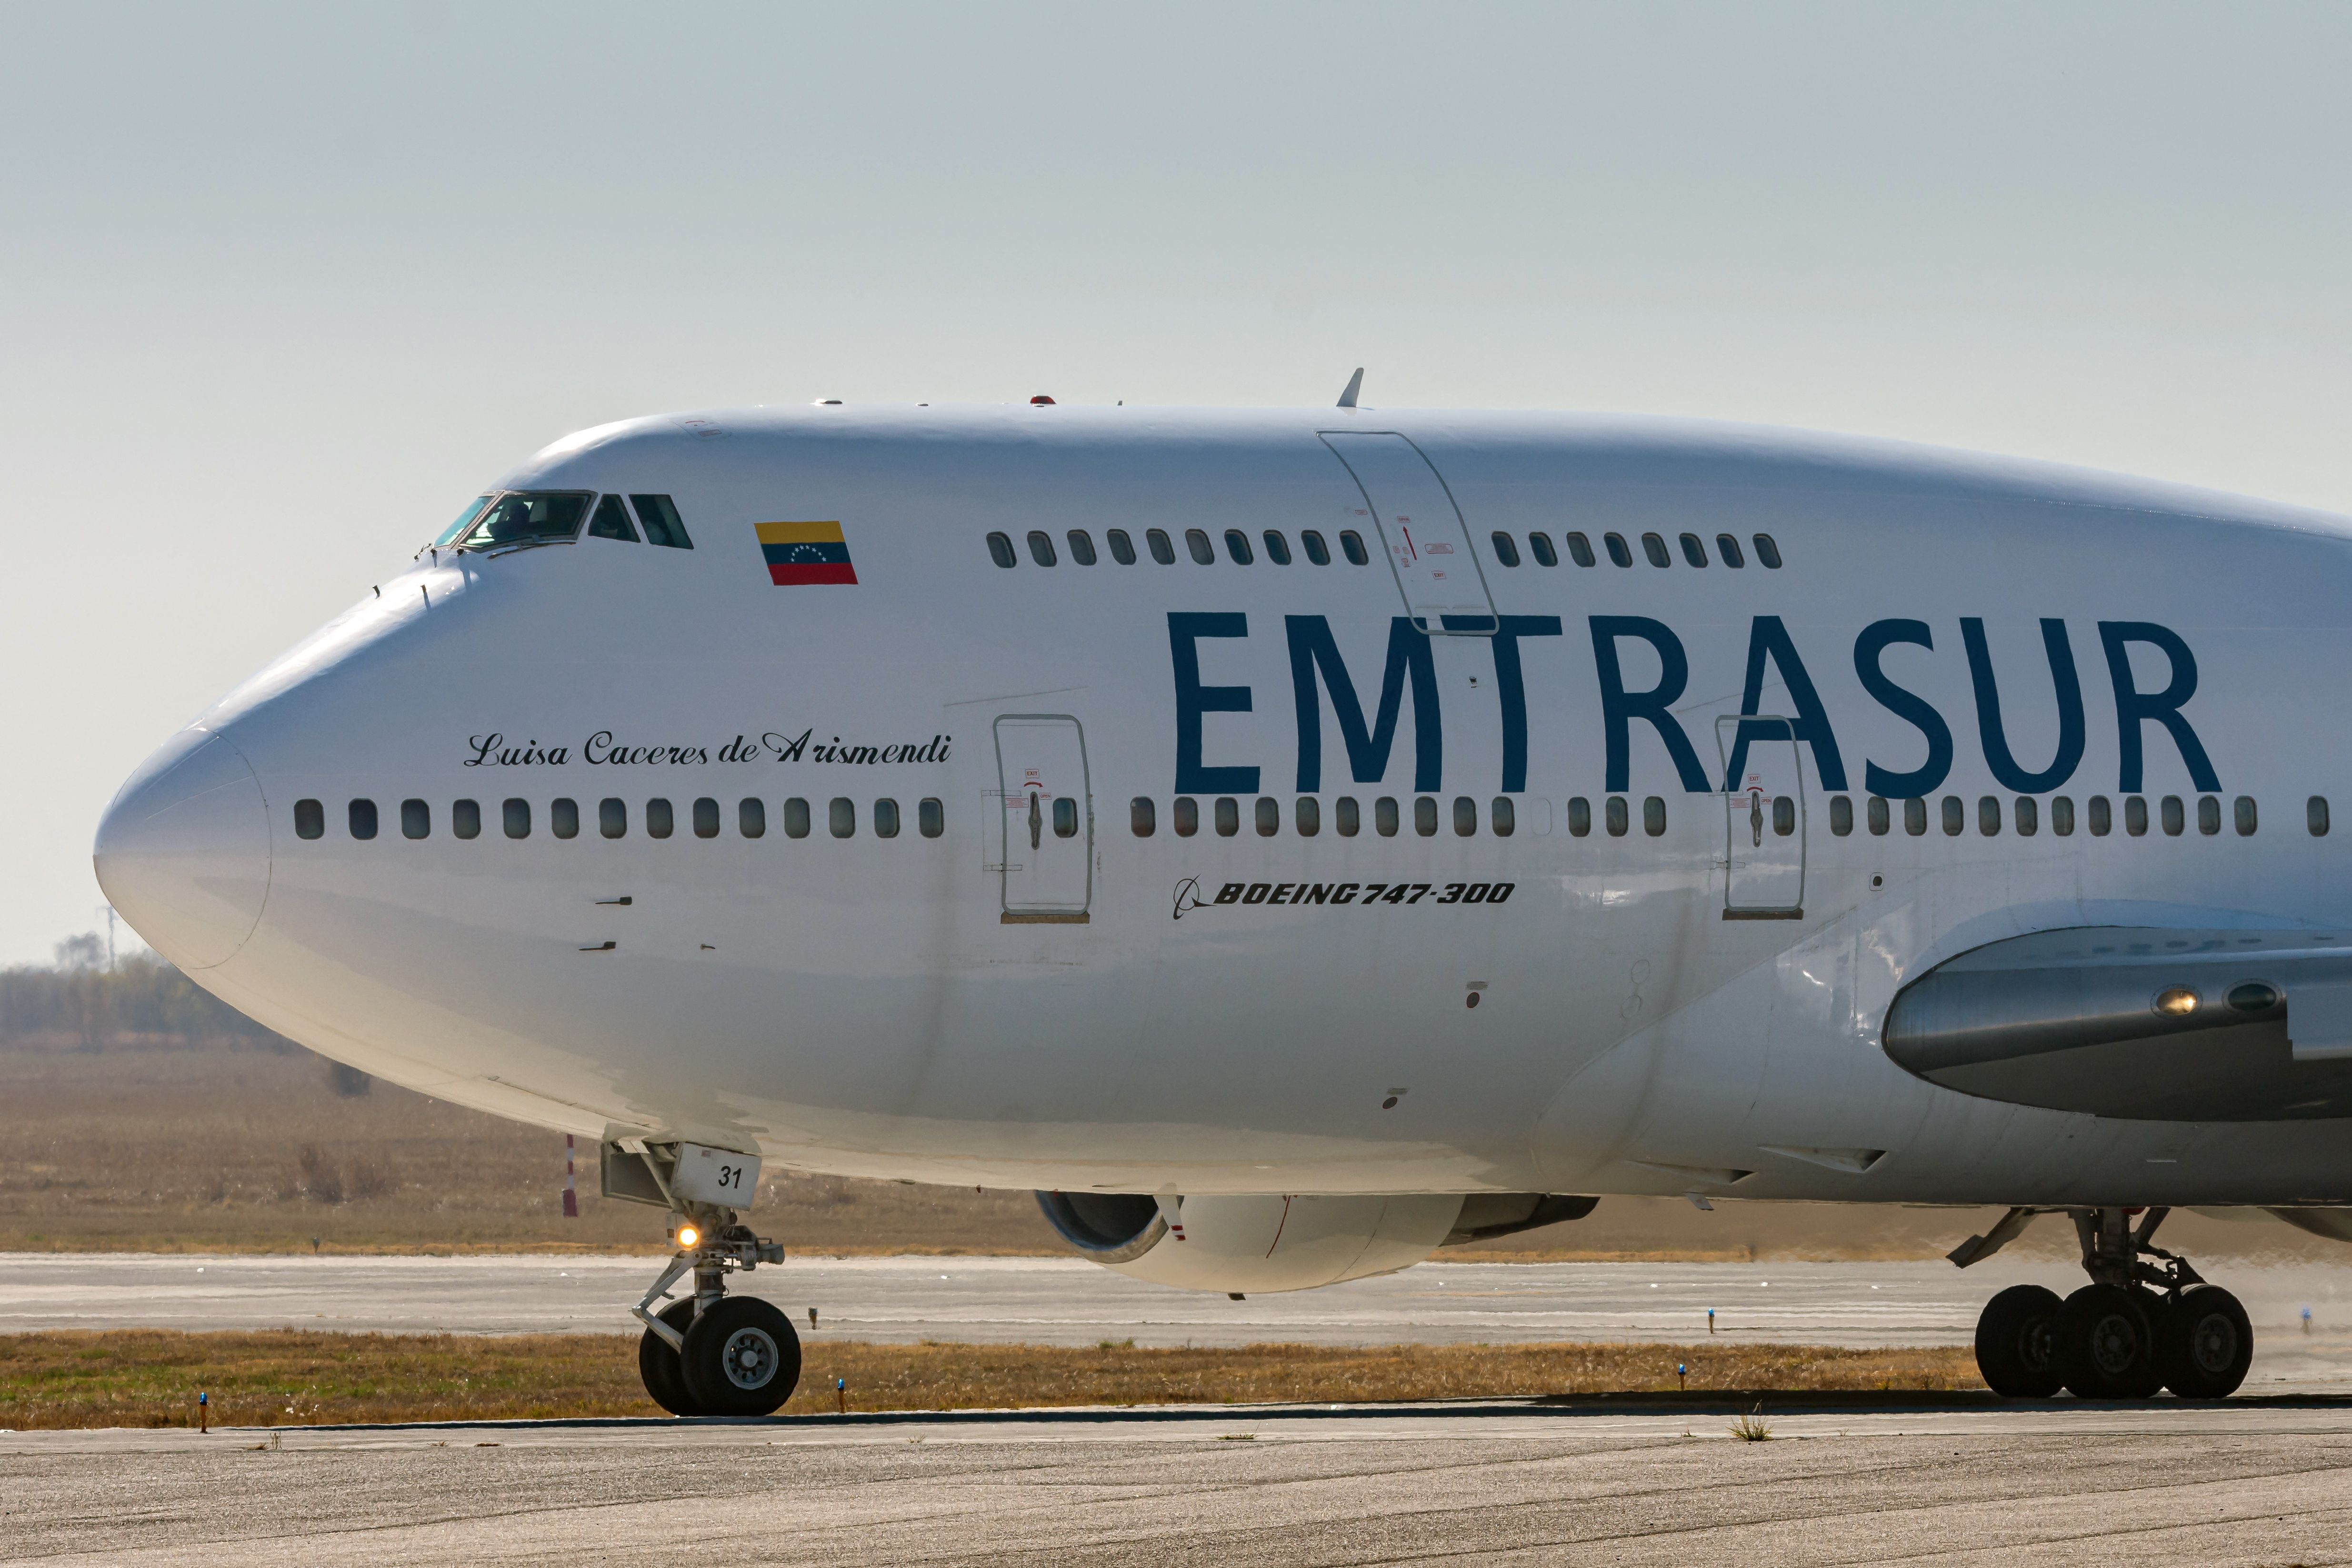 Emtrasur's Boeing 747-300M